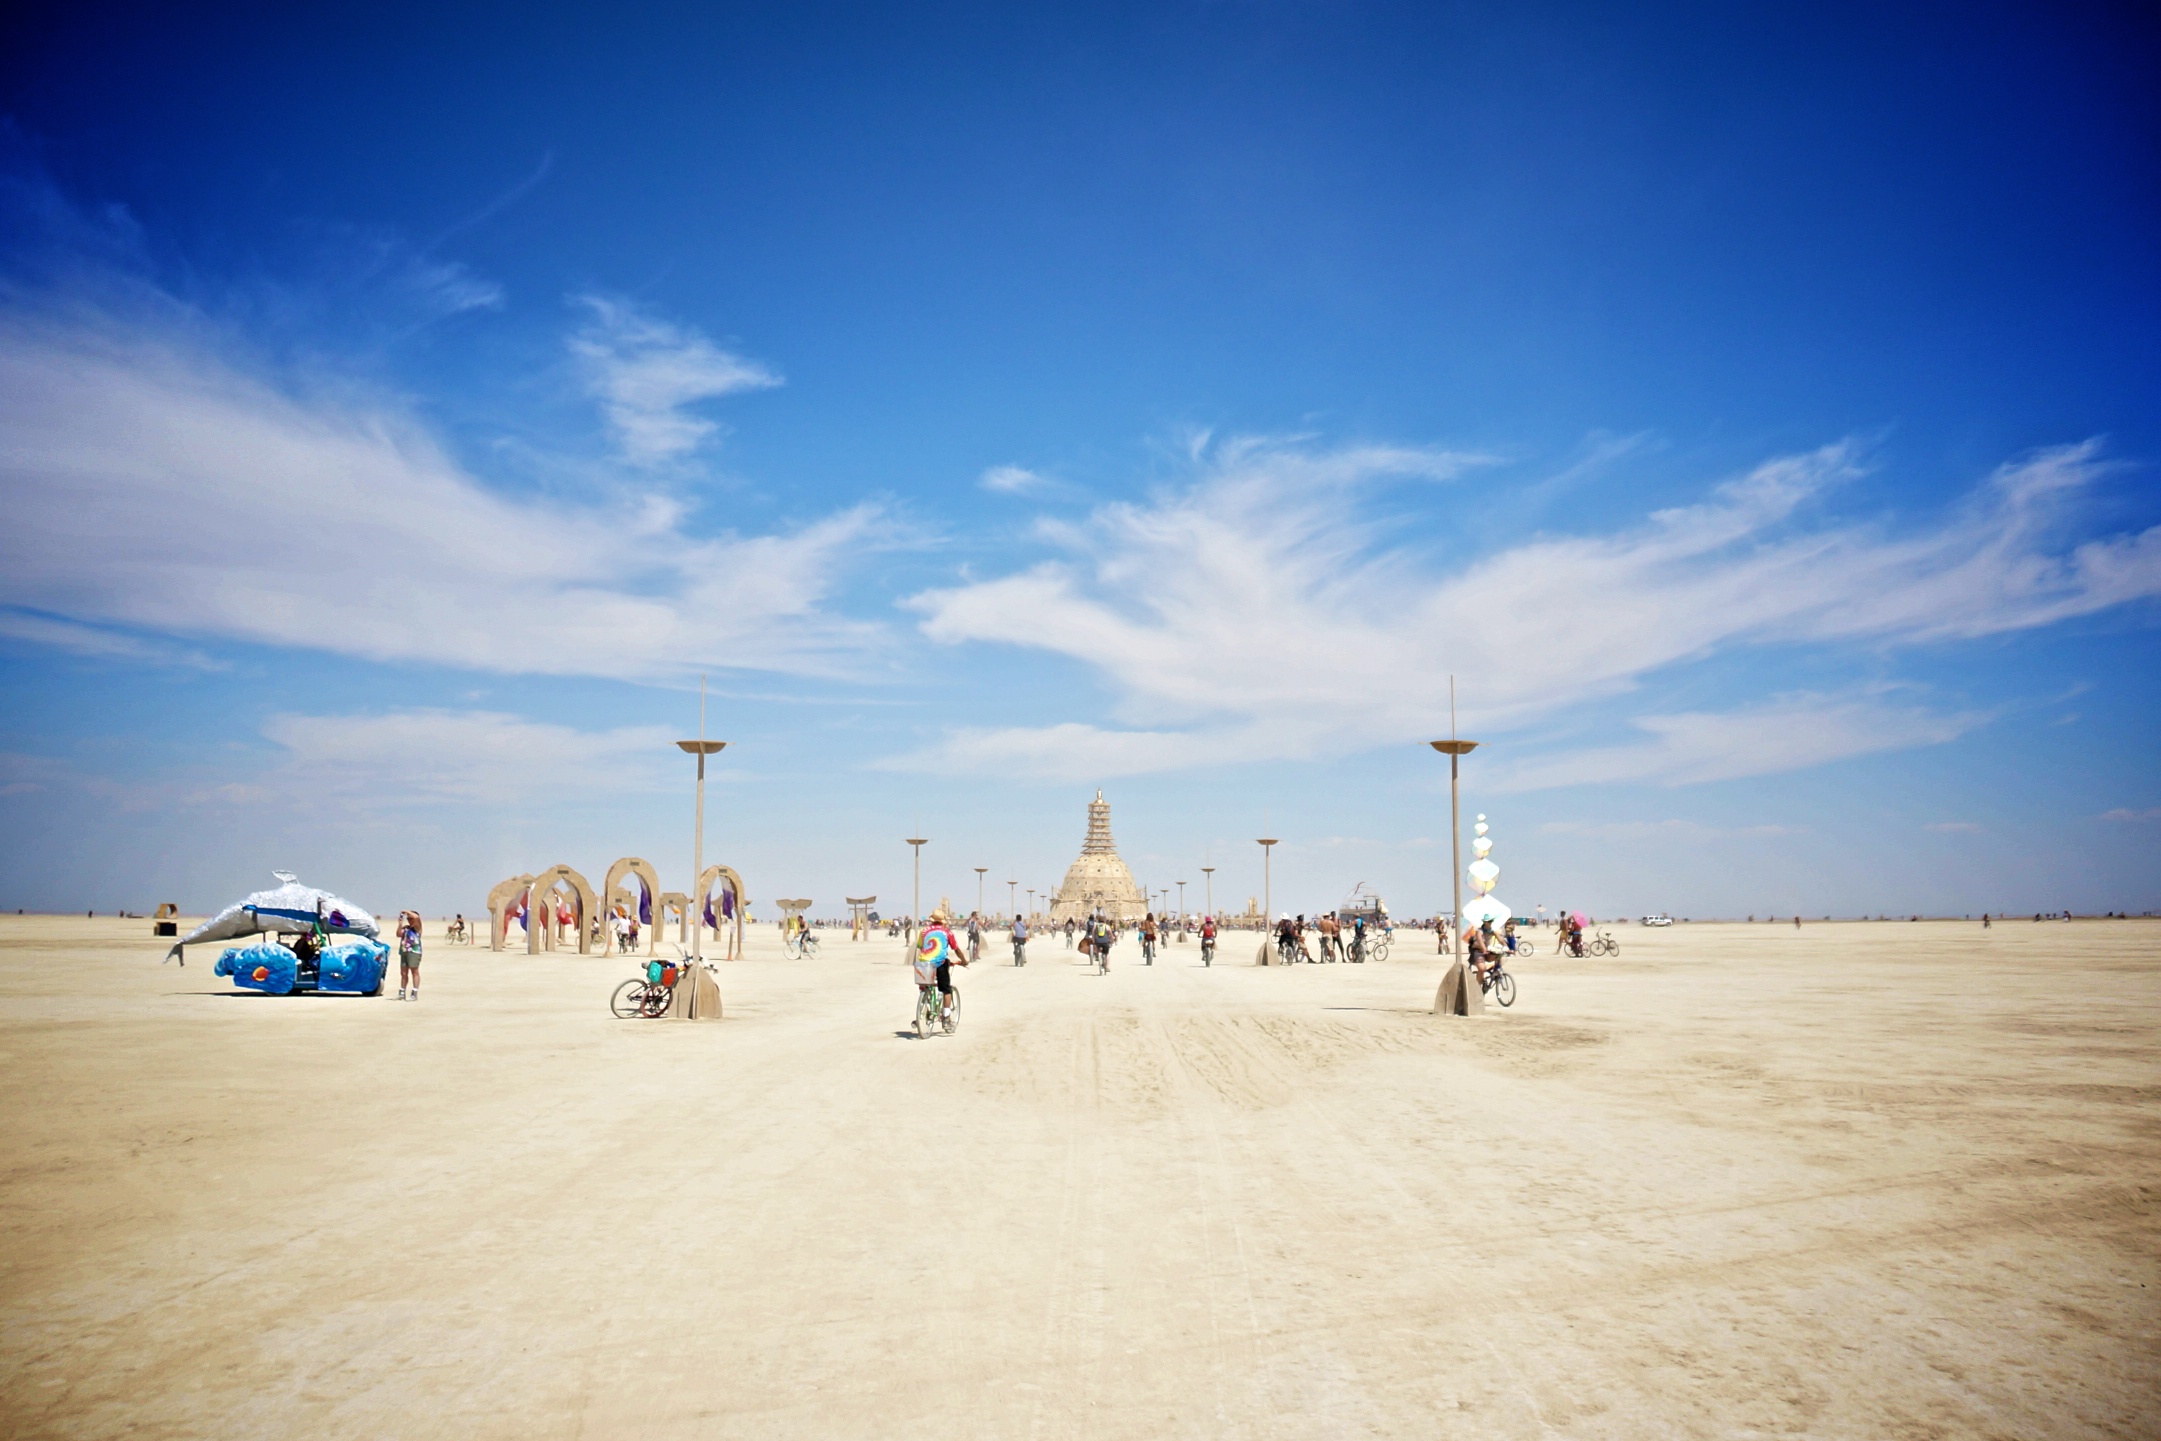 Lituanica Birds Camp. Burning Man 2014